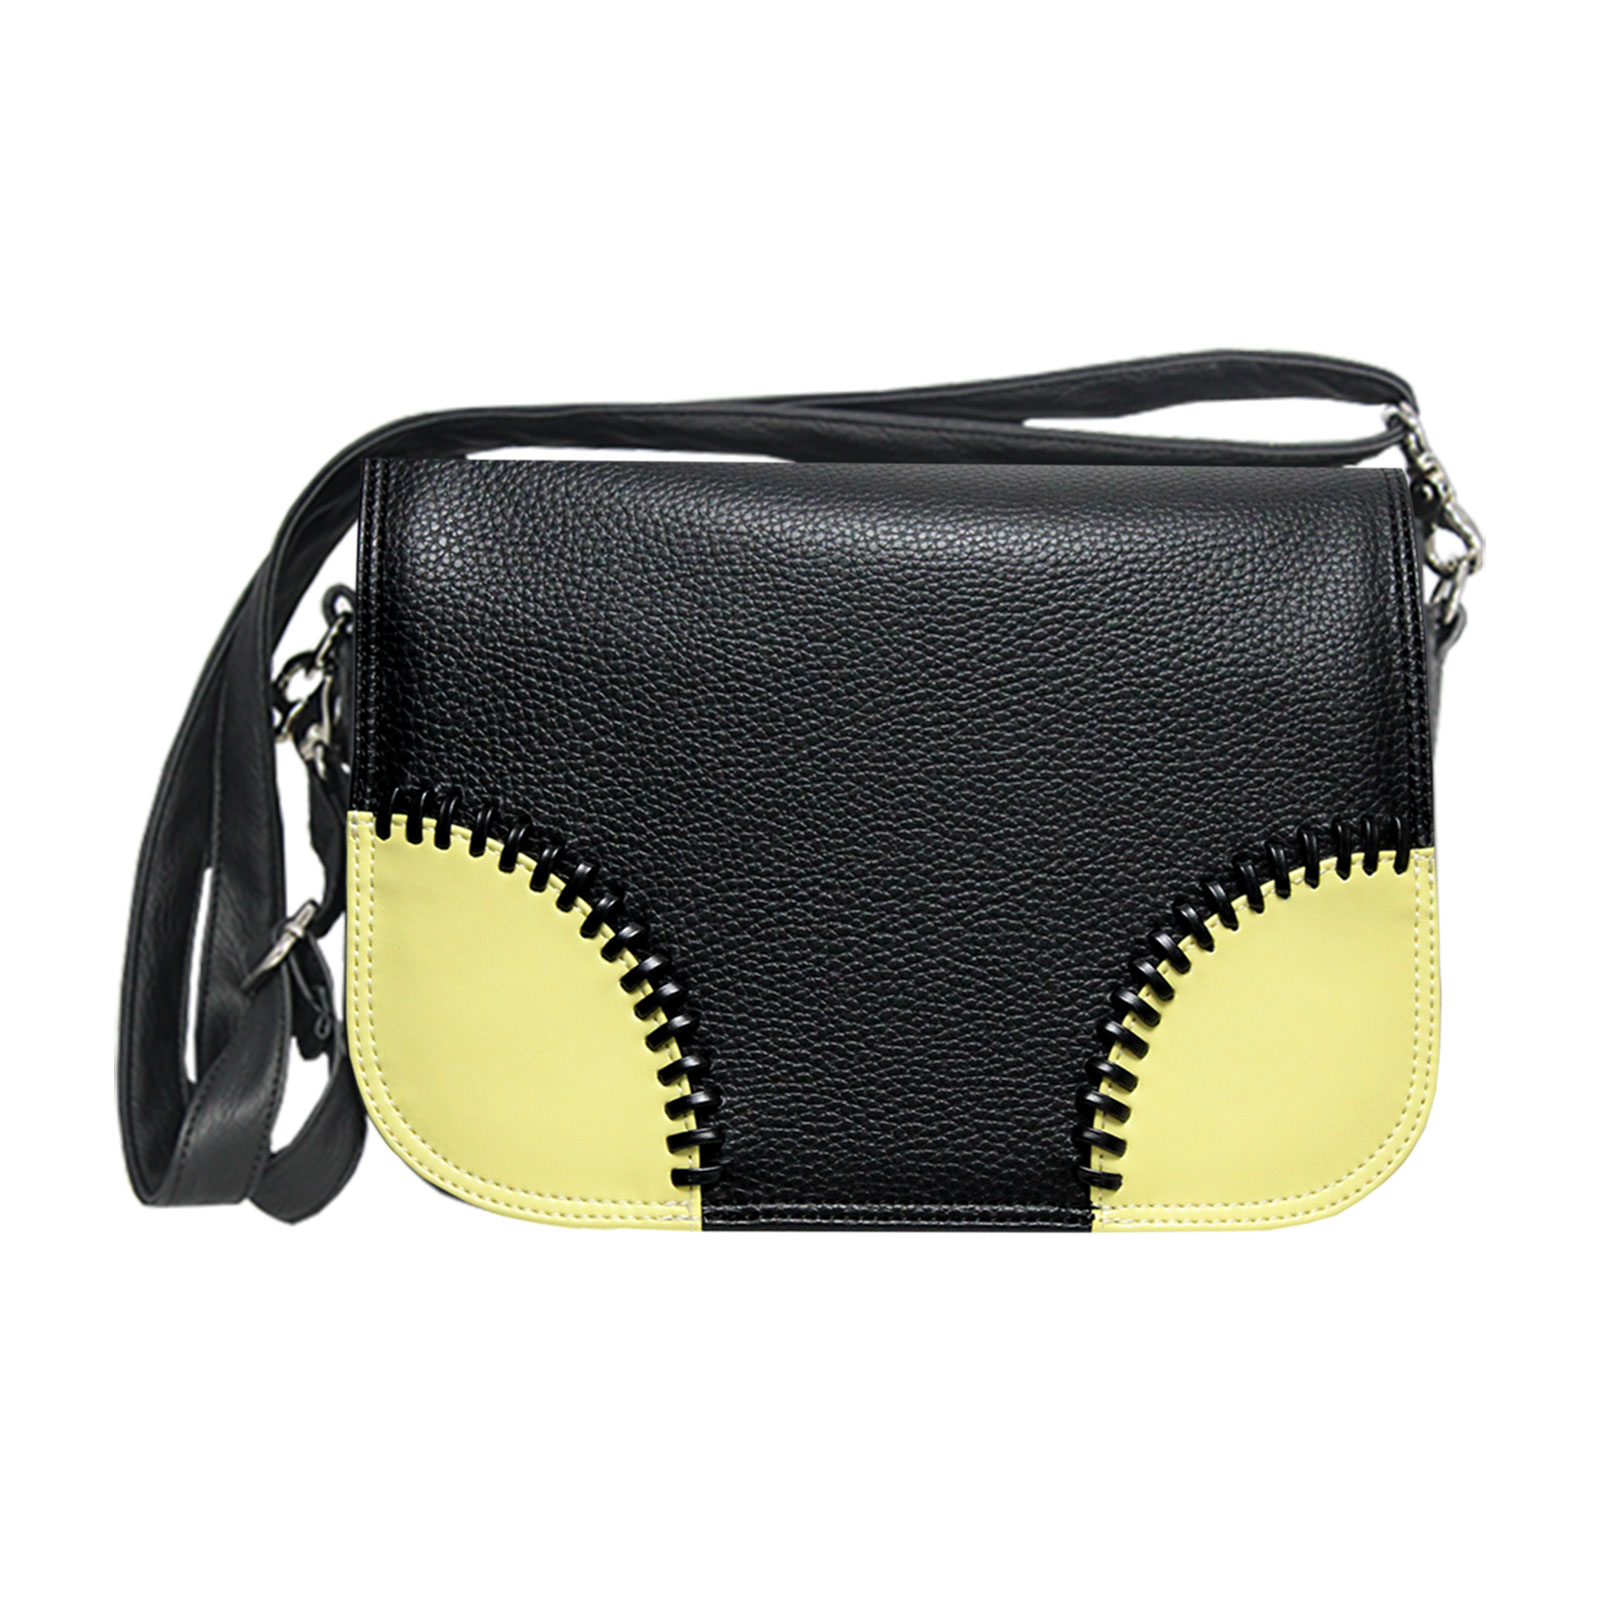 Croos over Handtasche in schwarz mit gelben Ecken von Delieta soft